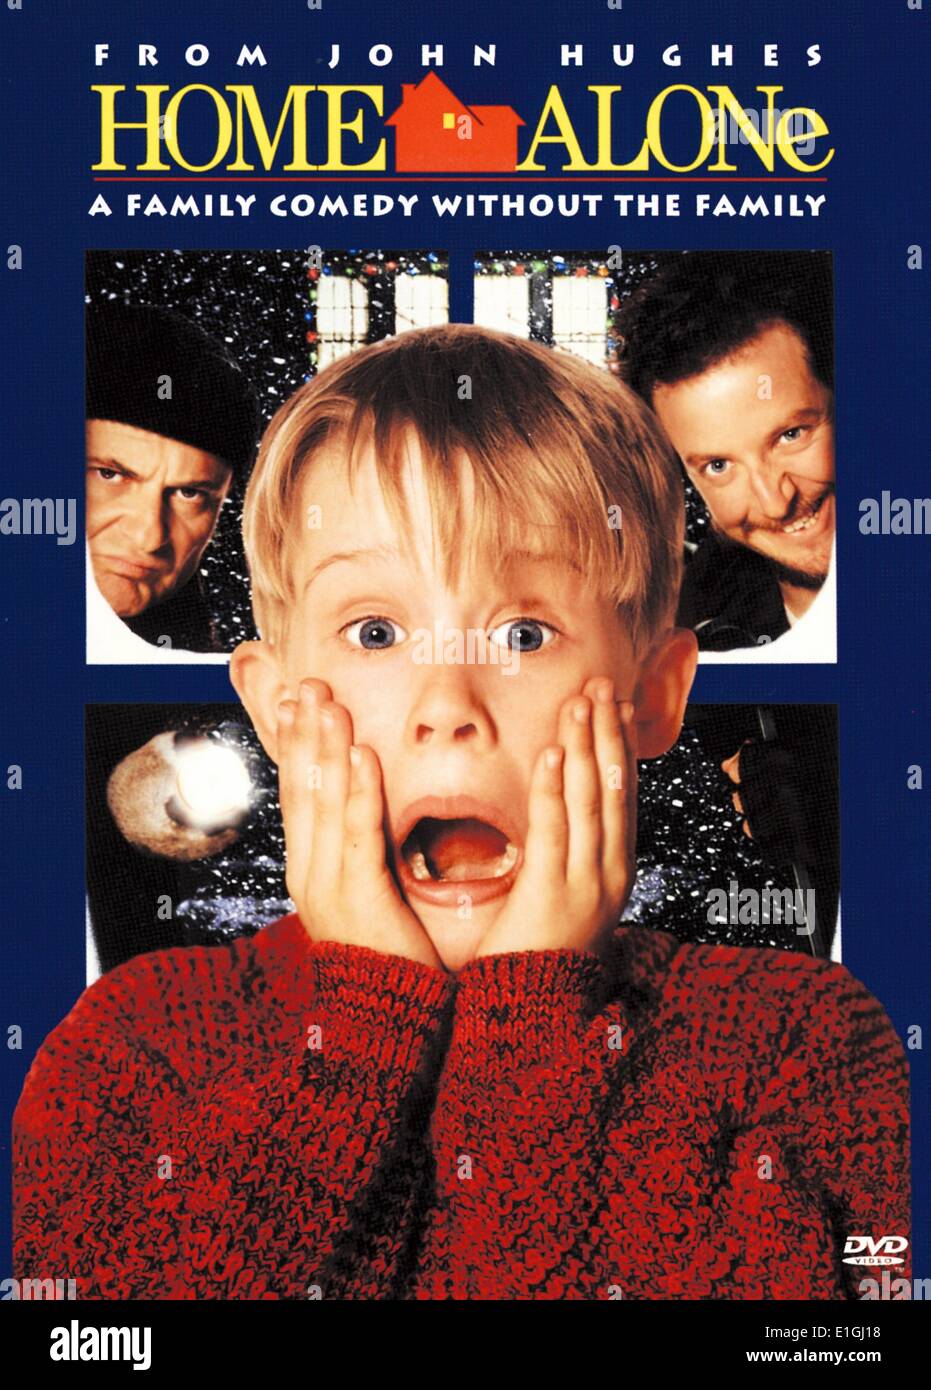 Home Alone 1990 amerikanische Weihnachten Familie Comedy Film starring Macaulay Culkin. Stockfoto